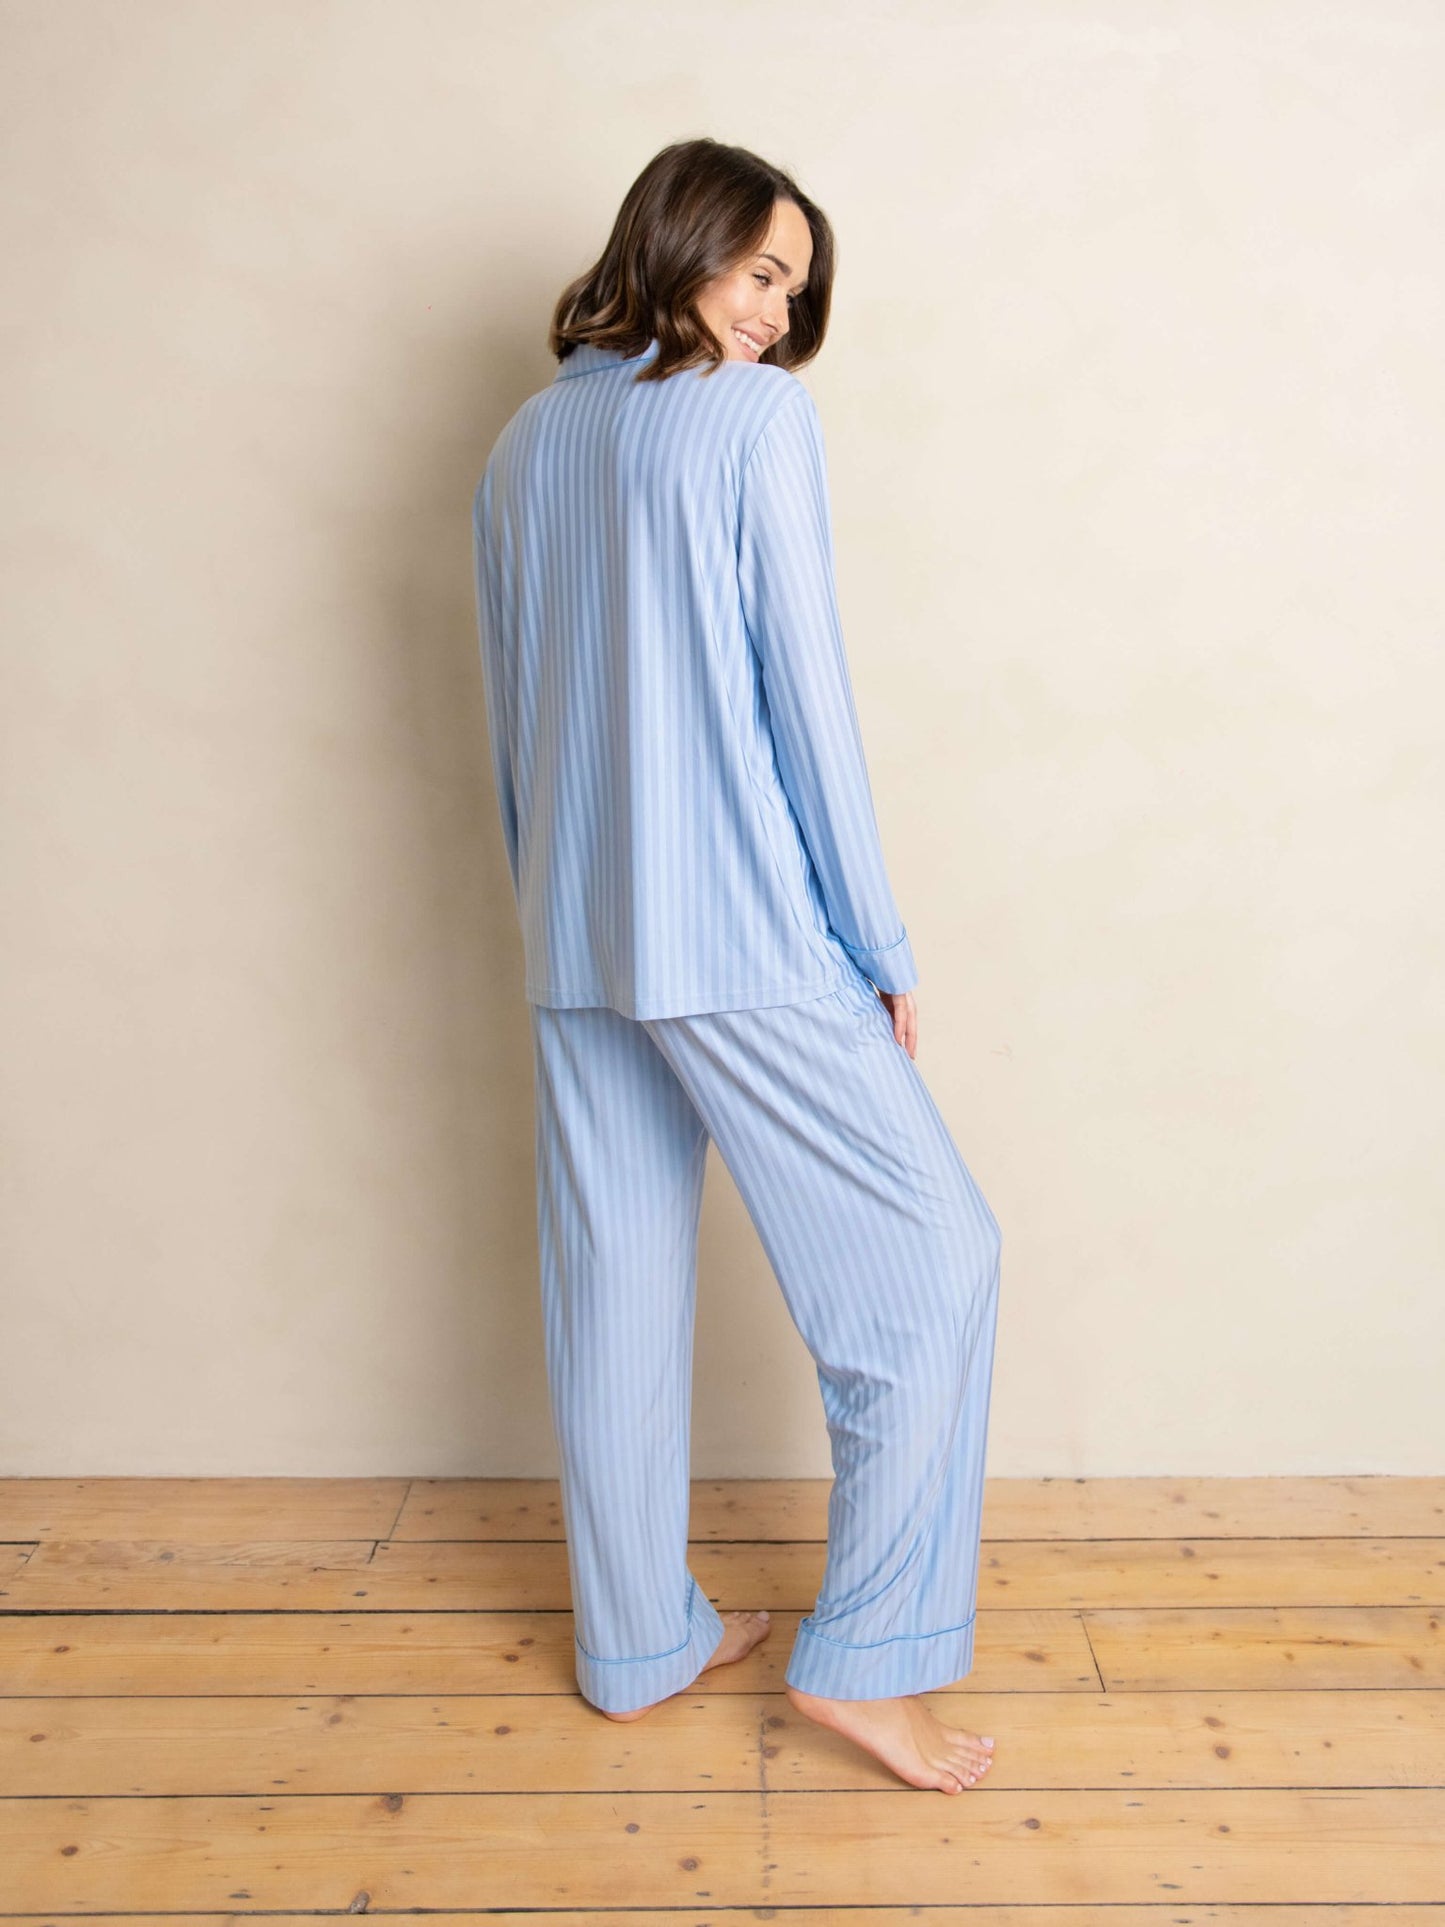 The Luxury Striped Pyjamas - Plush Underwear